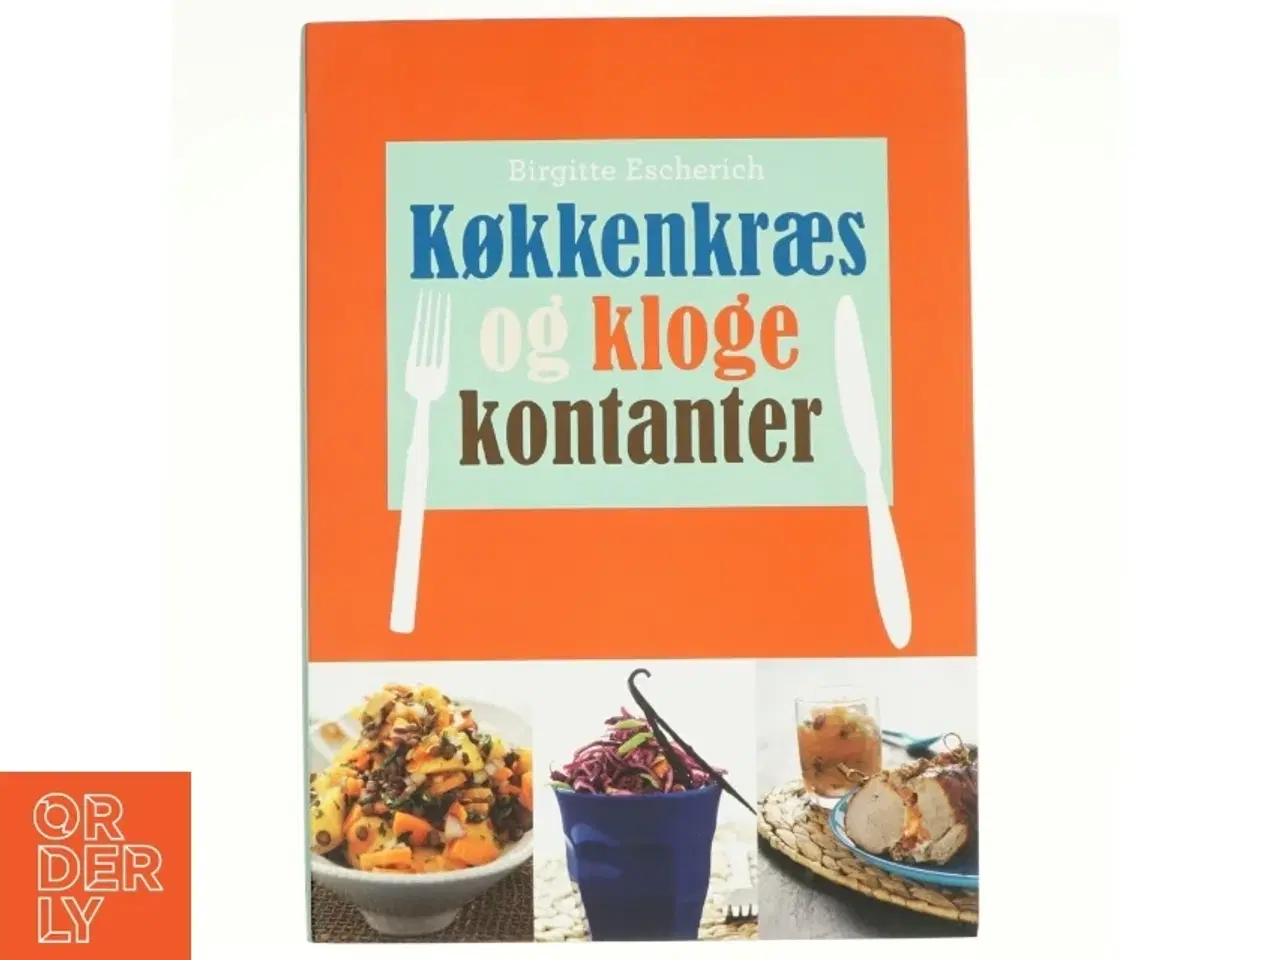 Billede 1 - Køkkenkræs og kloge kontanter af Birgitte Escherich (Bog)